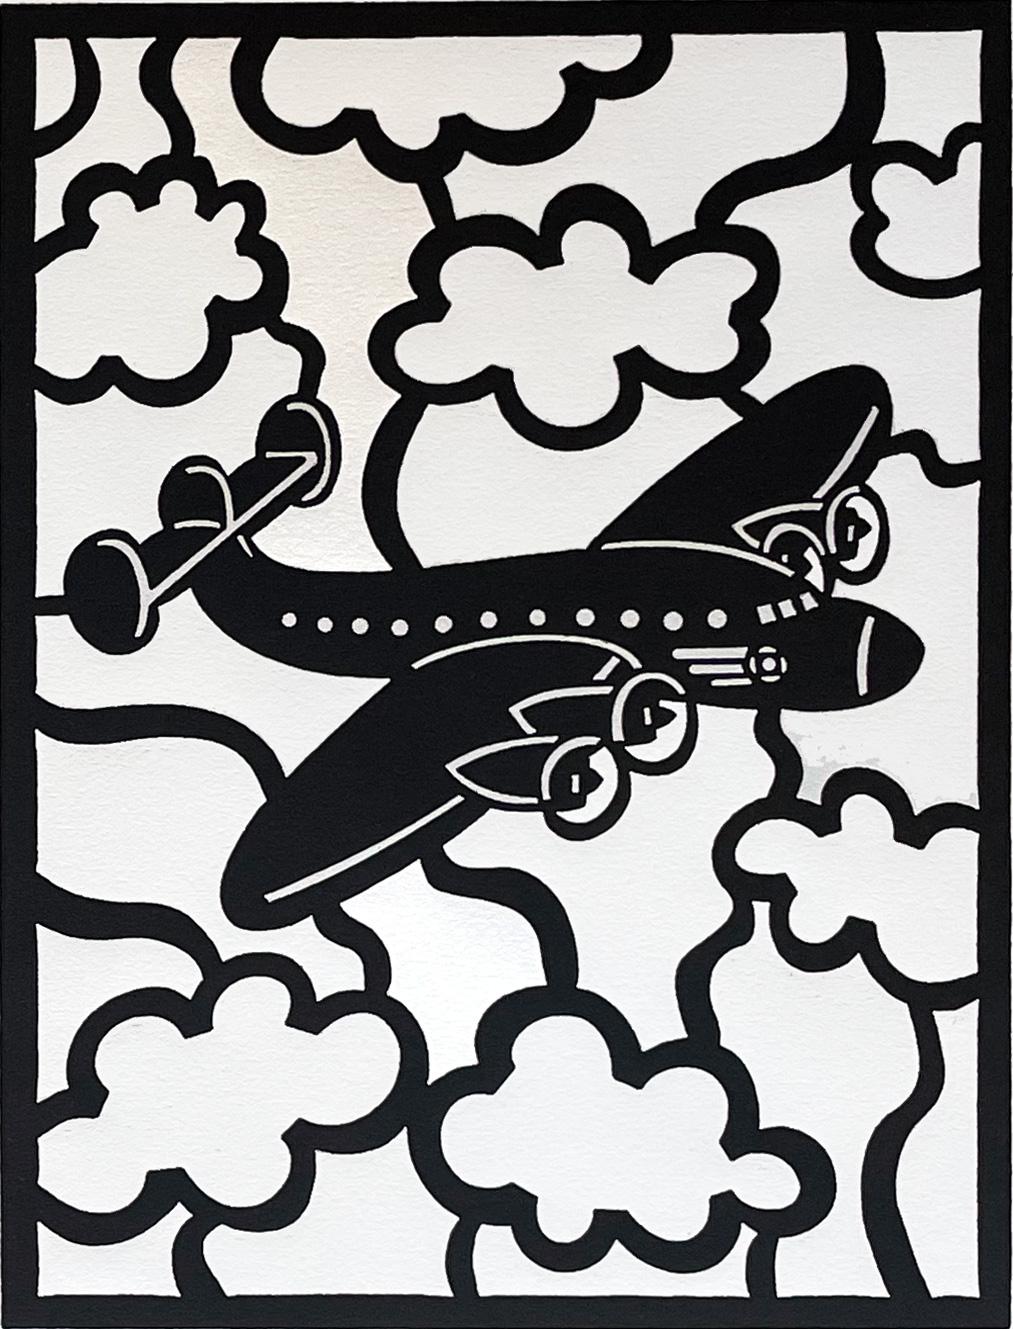 Vom Künstler signiert und betitelt, aus einer Auflage von 20 Stück. Dieser Holzschnitt ist eine kühne grafische Darstellung des Lockheed Constellation-Flugzeugs, das in Südkalifornien hergestellt wurde

Romero war in der ersten Einzelausstellung